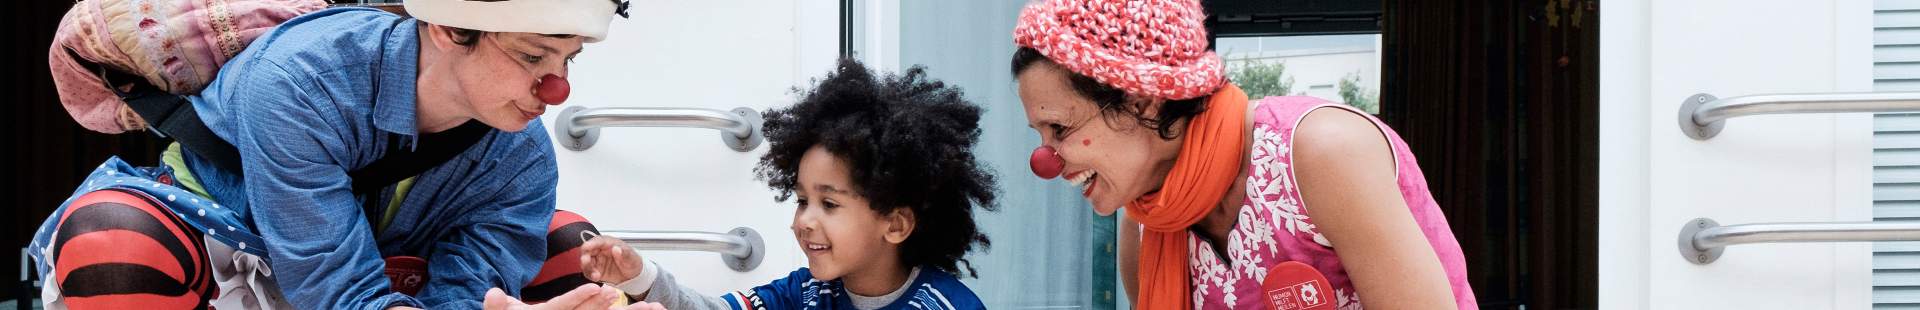 VRK HUMOR HILFT HEILEN – Zwei HHH Clowns spielen mit einem Kind auf dem Boden in der Asklepios Kinderklinik.